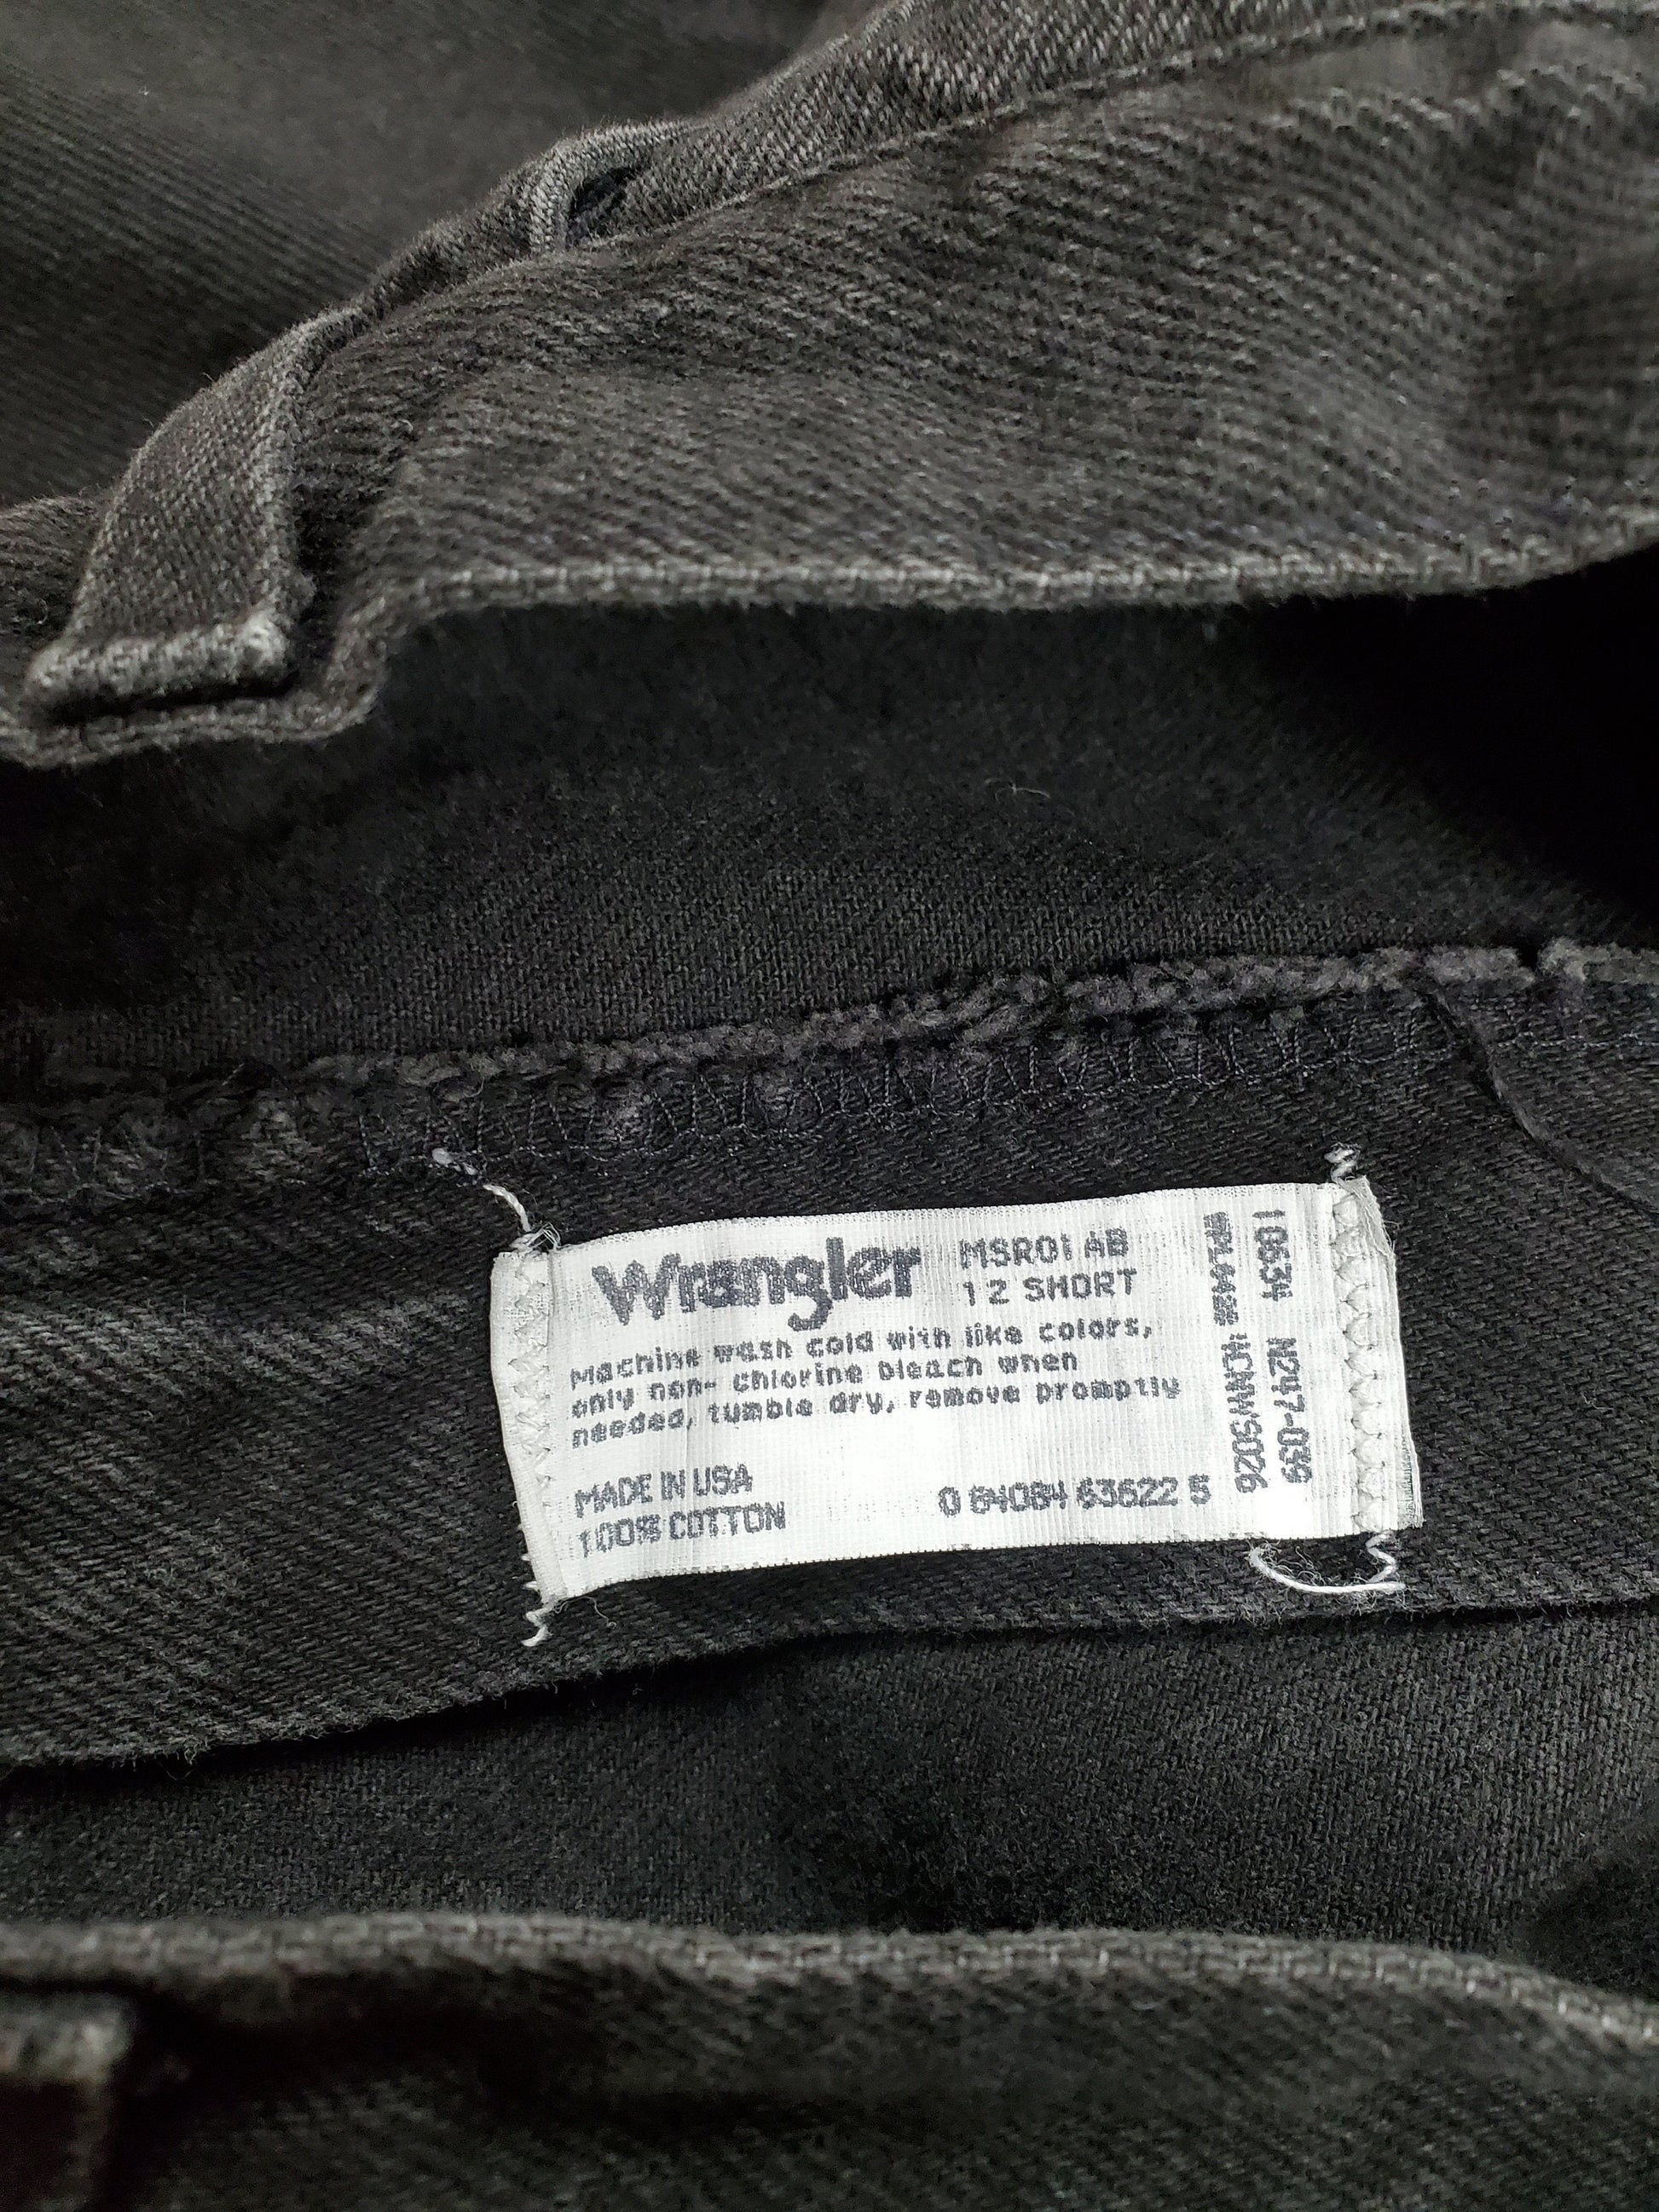 1990s Wrangler Black Denim Jeans Made in USA Size 28x30.5